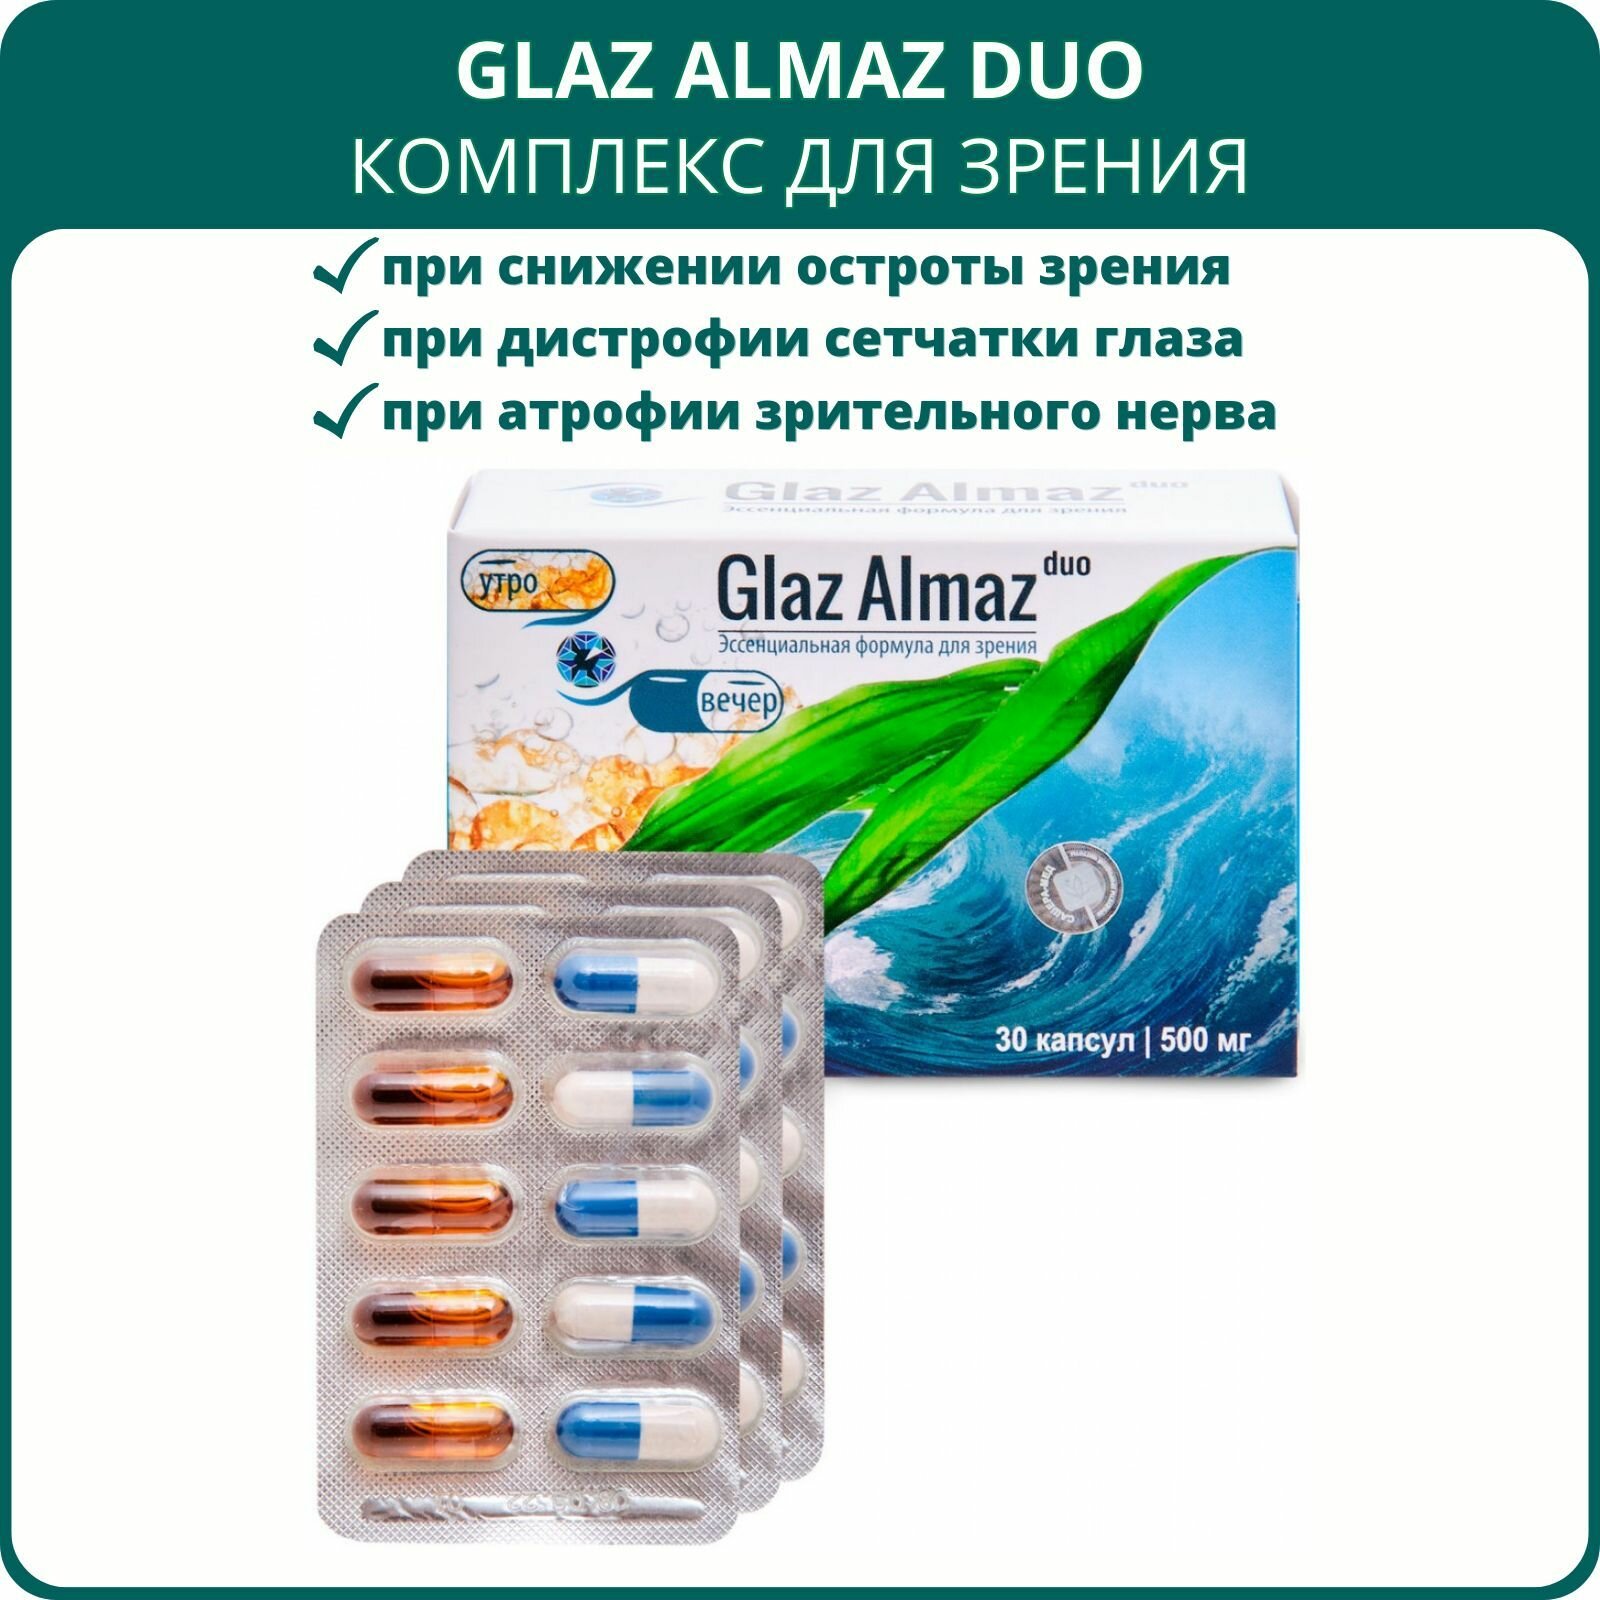 Glaz Almaz DUO комплекс для зрения, 30 капсул. Пищевая добавка для глаз при катаракте и глаукоме.